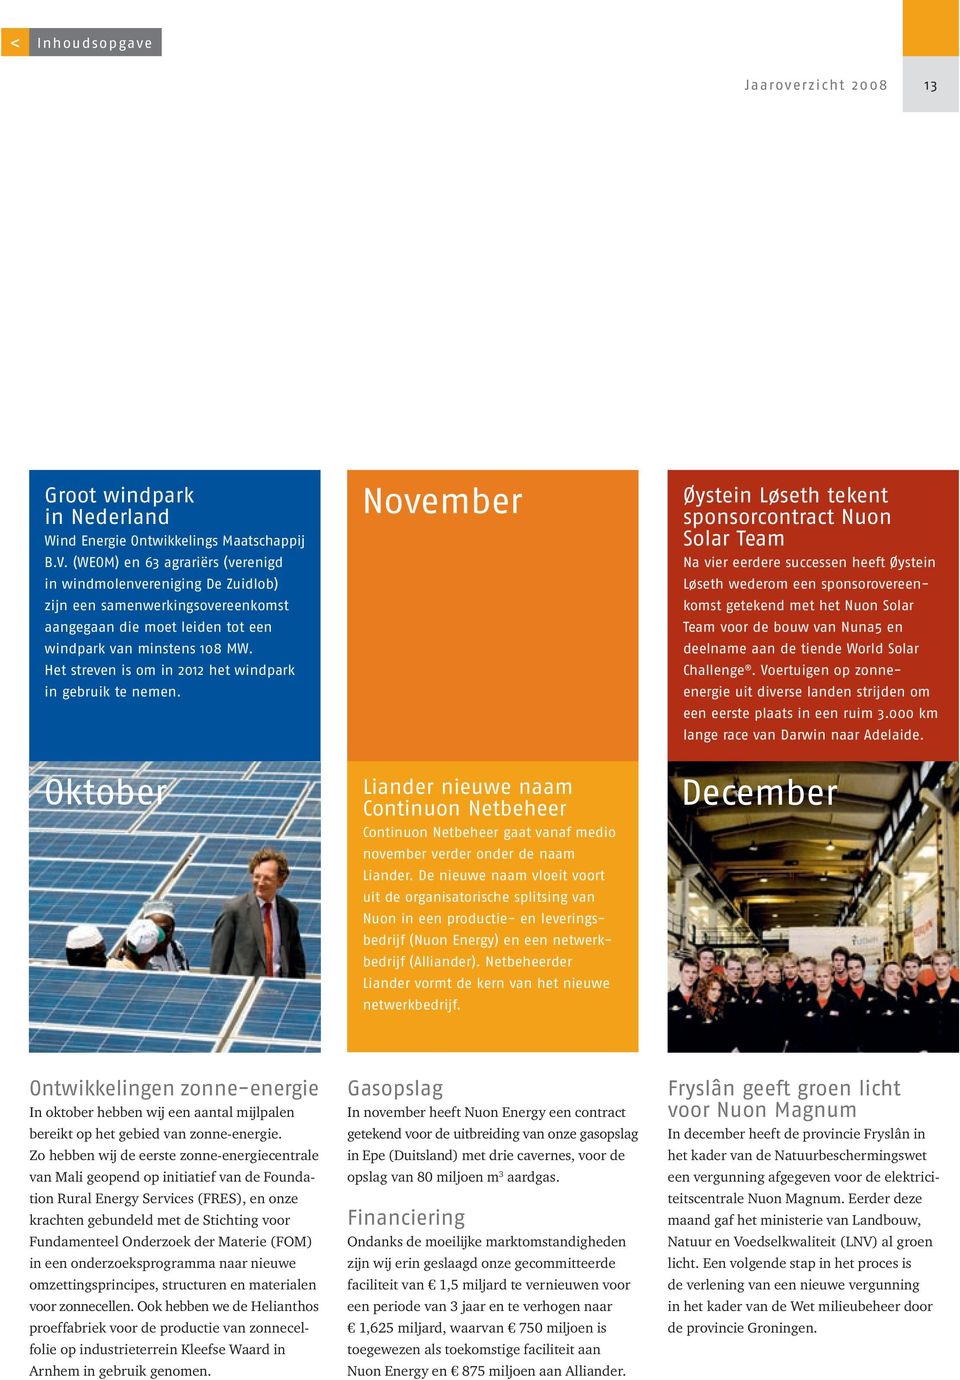 Het streven is om in 2012 het windpark in gebruik te nemen. Oktober November Liander nieuwe naam Continuon Netbeheer Continuon Netbeheer gaat vanaf medio november verder onder de naam Liander.